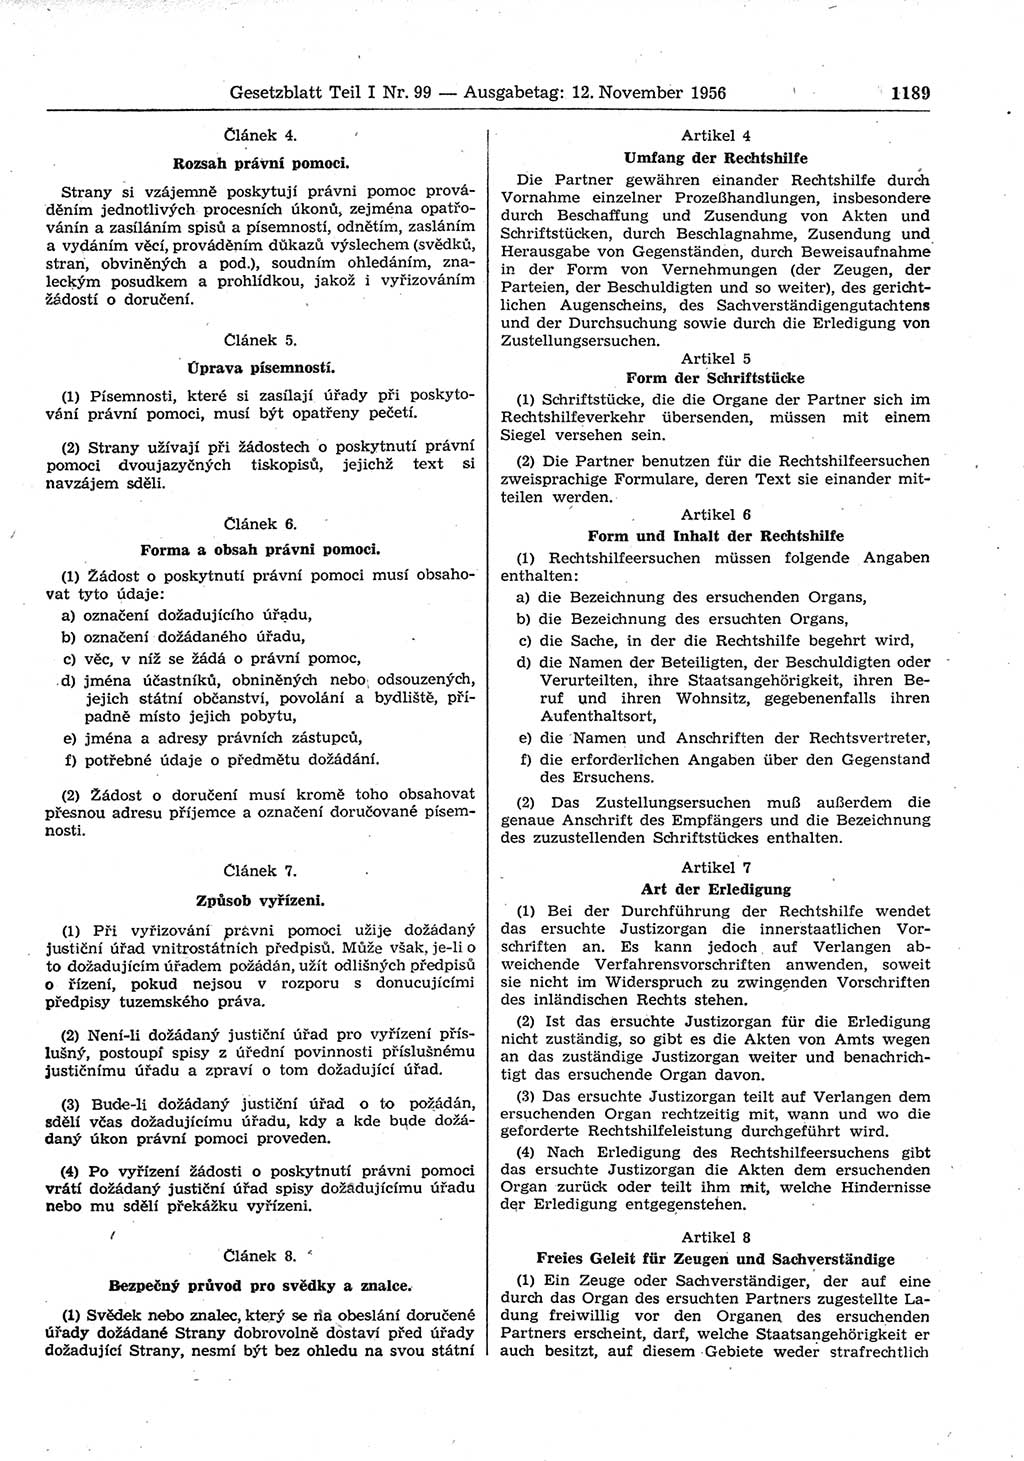 Gesetzblatt (GBl.) der Deutschen Demokratischen Republik (DDR) Teil Ⅰ 1956, Seite 1189 (GBl. DDR Ⅰ 1956, S. 1189)